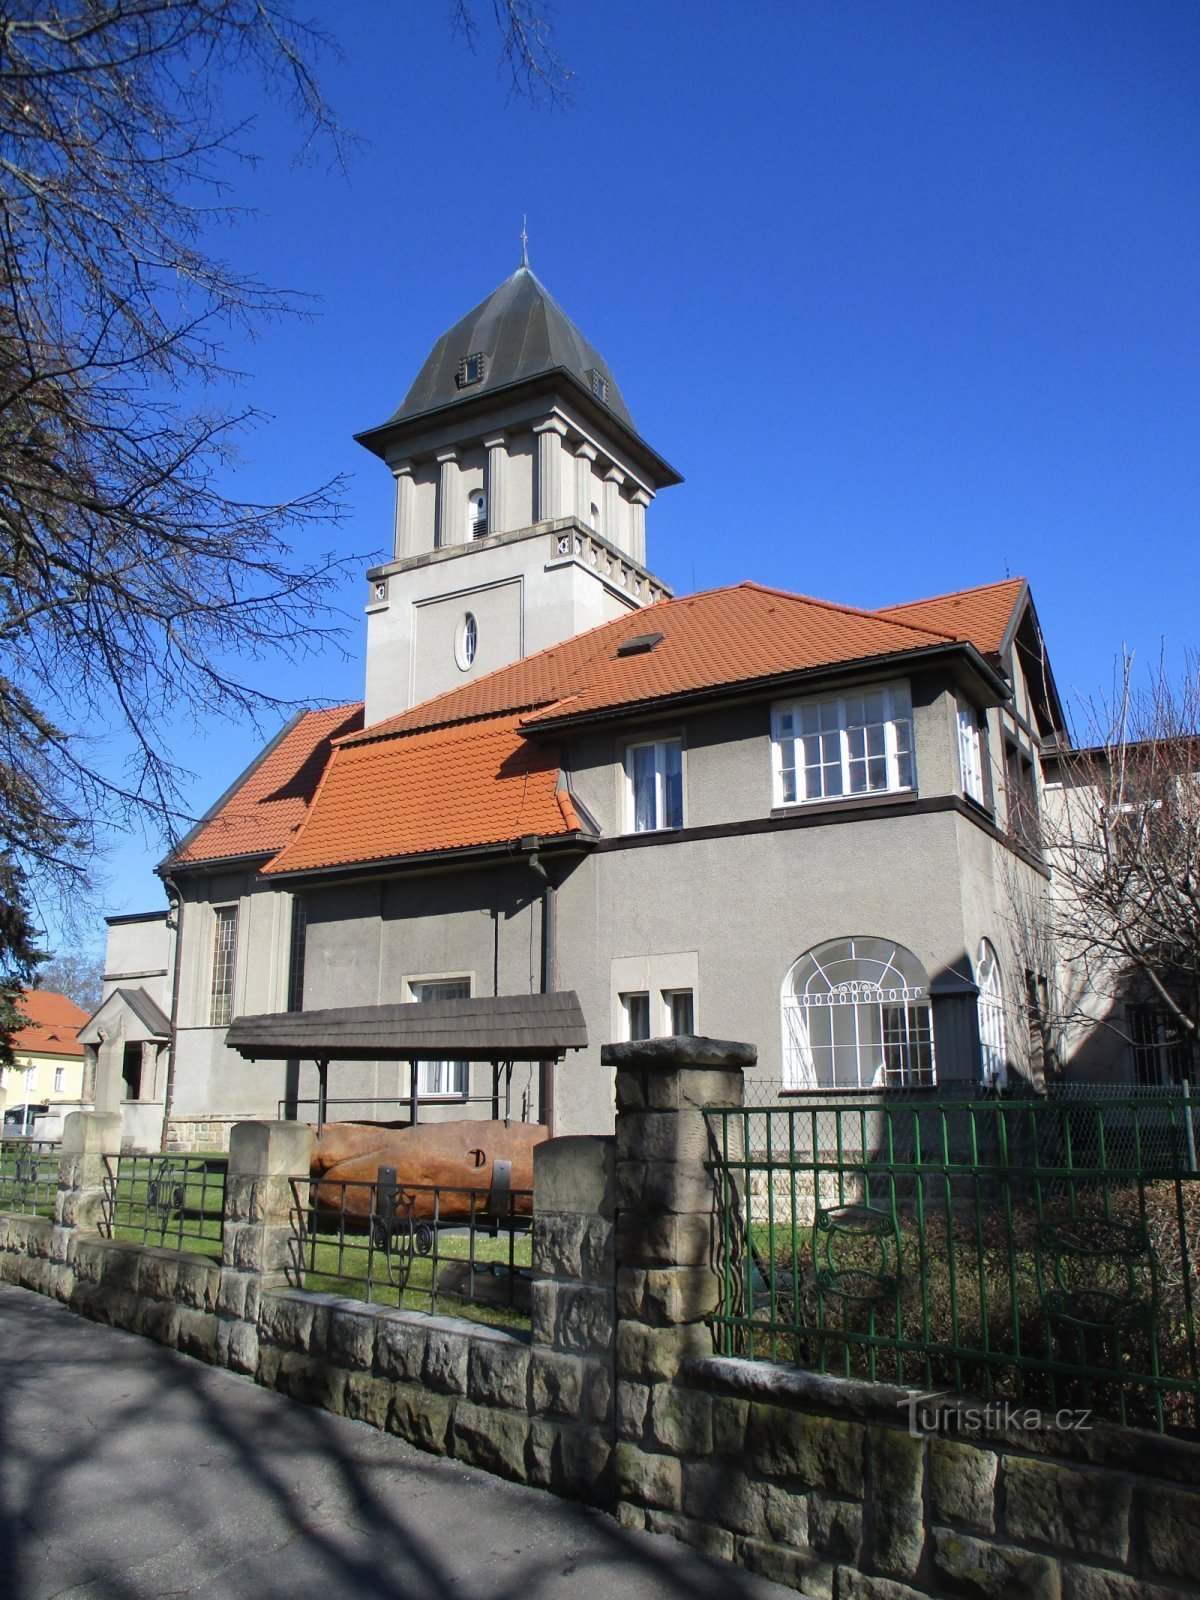 Ευαγγελική εκκλησία με πρυτανείο (Hradec Králové, 19.3.2020/XNUMX/XNUMX)